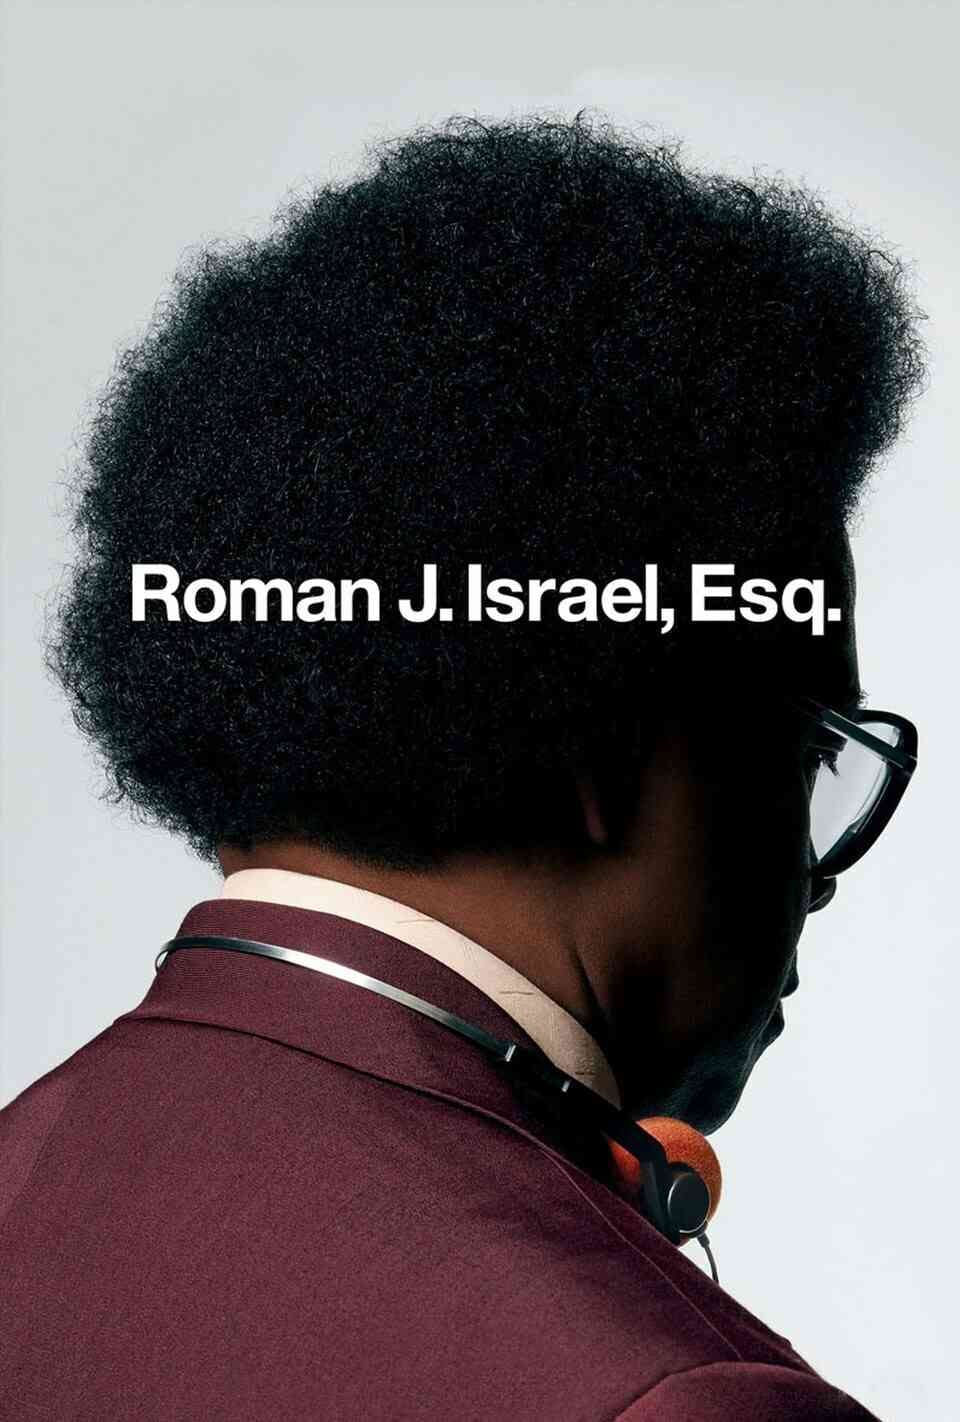 Read Roman J. Israel, Esq. screenplay (poster)